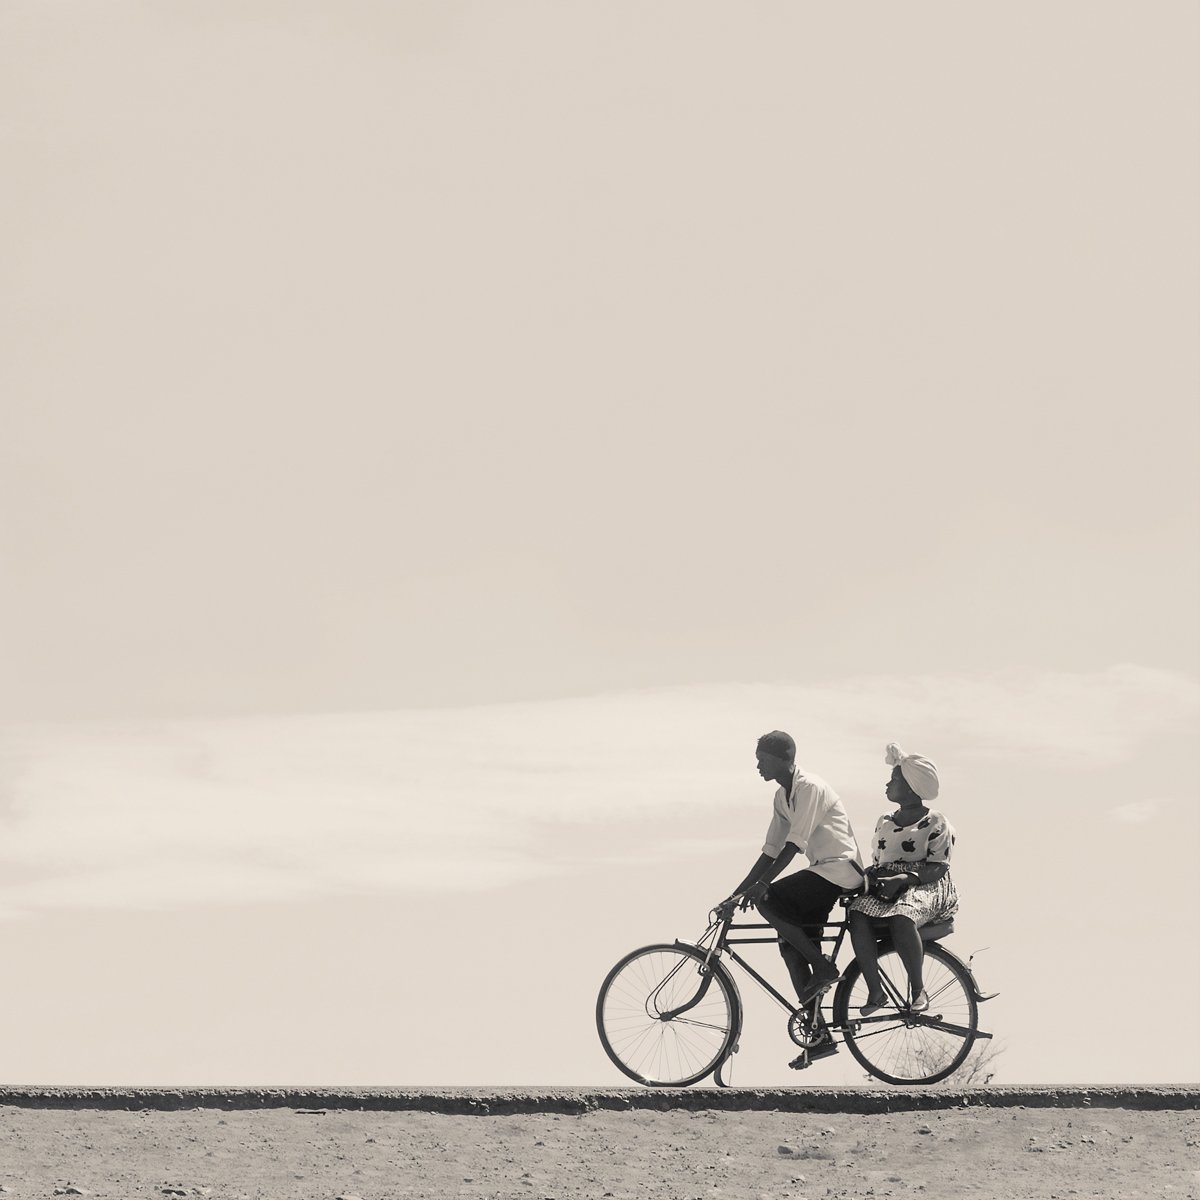  ⒸMarti Corn, Turkana on His Bicycle